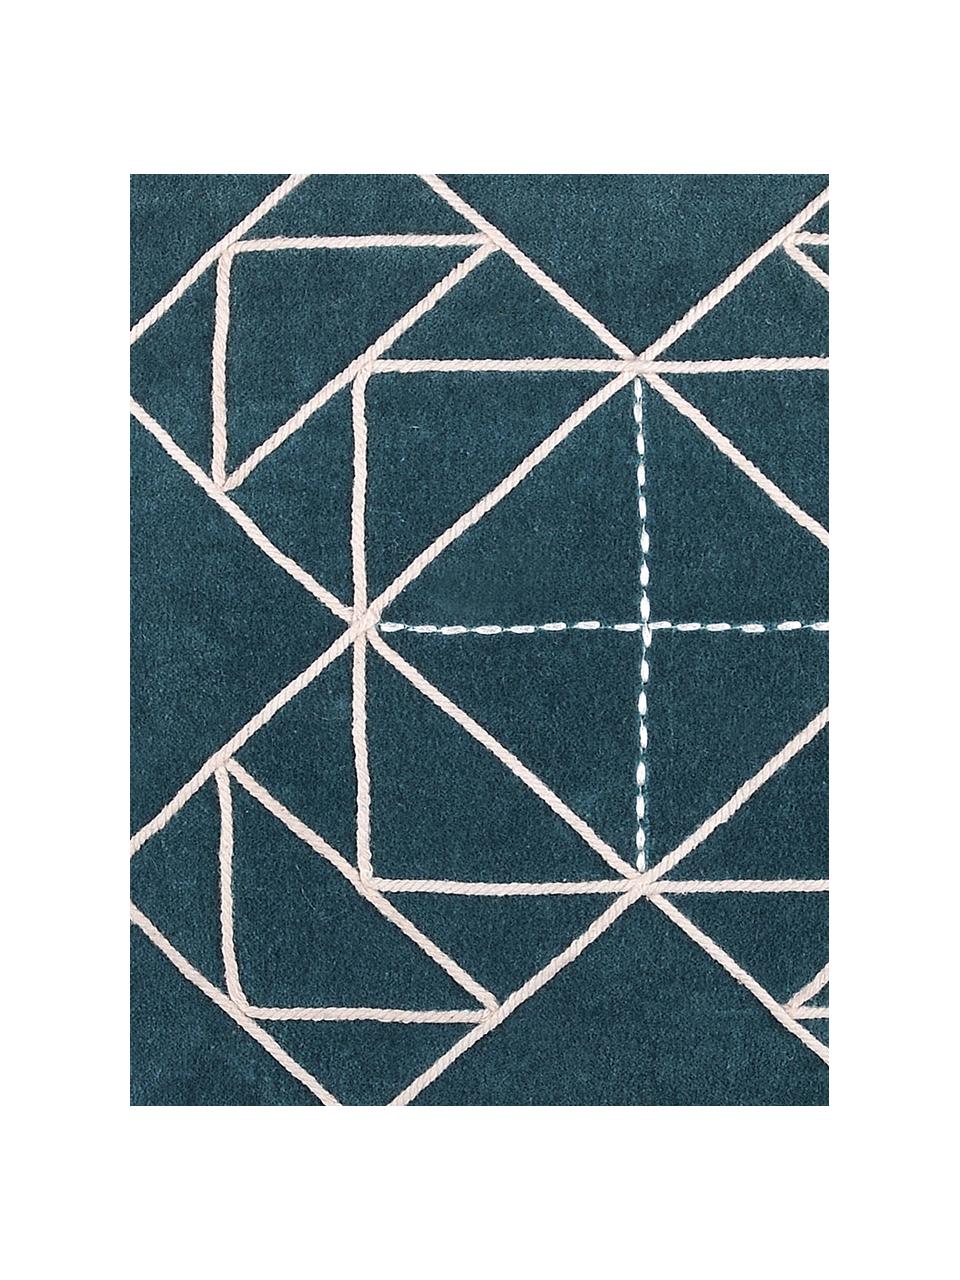 Kissen Niro mit graphischem Muster, mit Inlett, Bezug: 100% Baumwolle, Petrolblau, Weiss, 40 x 40 cm